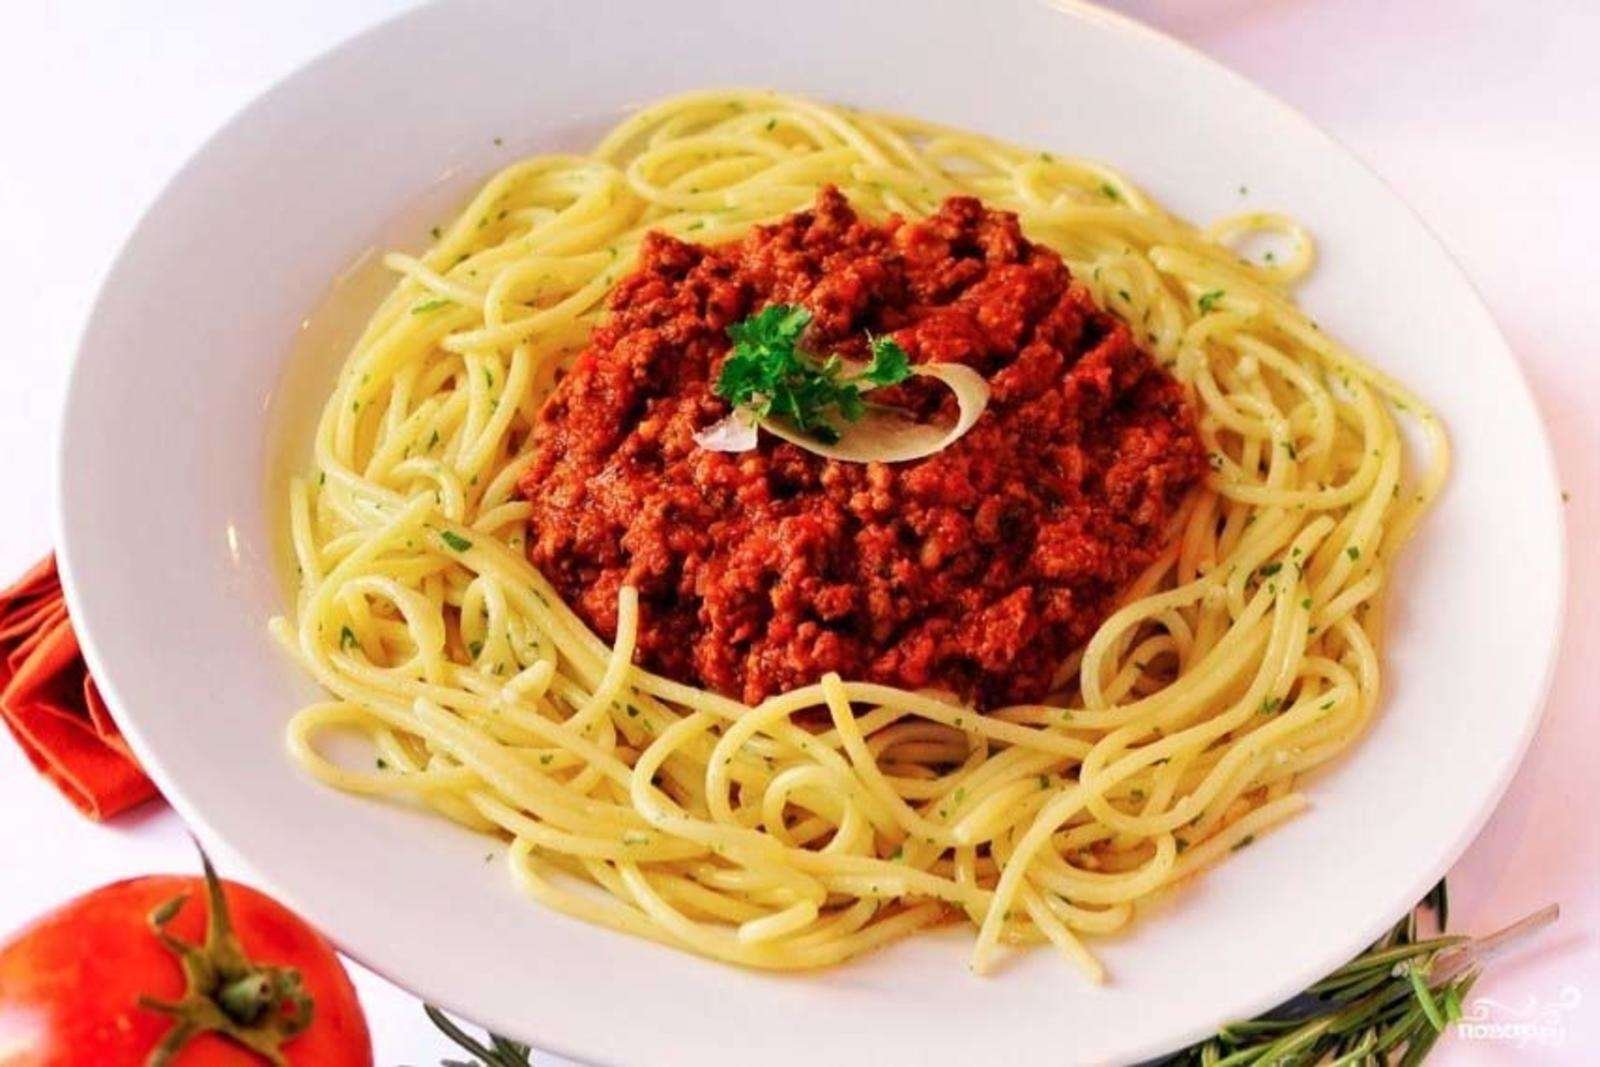 Спагетти болоньезе томатная паста. Спагетти болоньезе с фаршем и томатной пастой. Спагетти с фаршем в томатном соусе. Паста с томатной пастой и фврш. Паста болоньезе макароны по флотски.